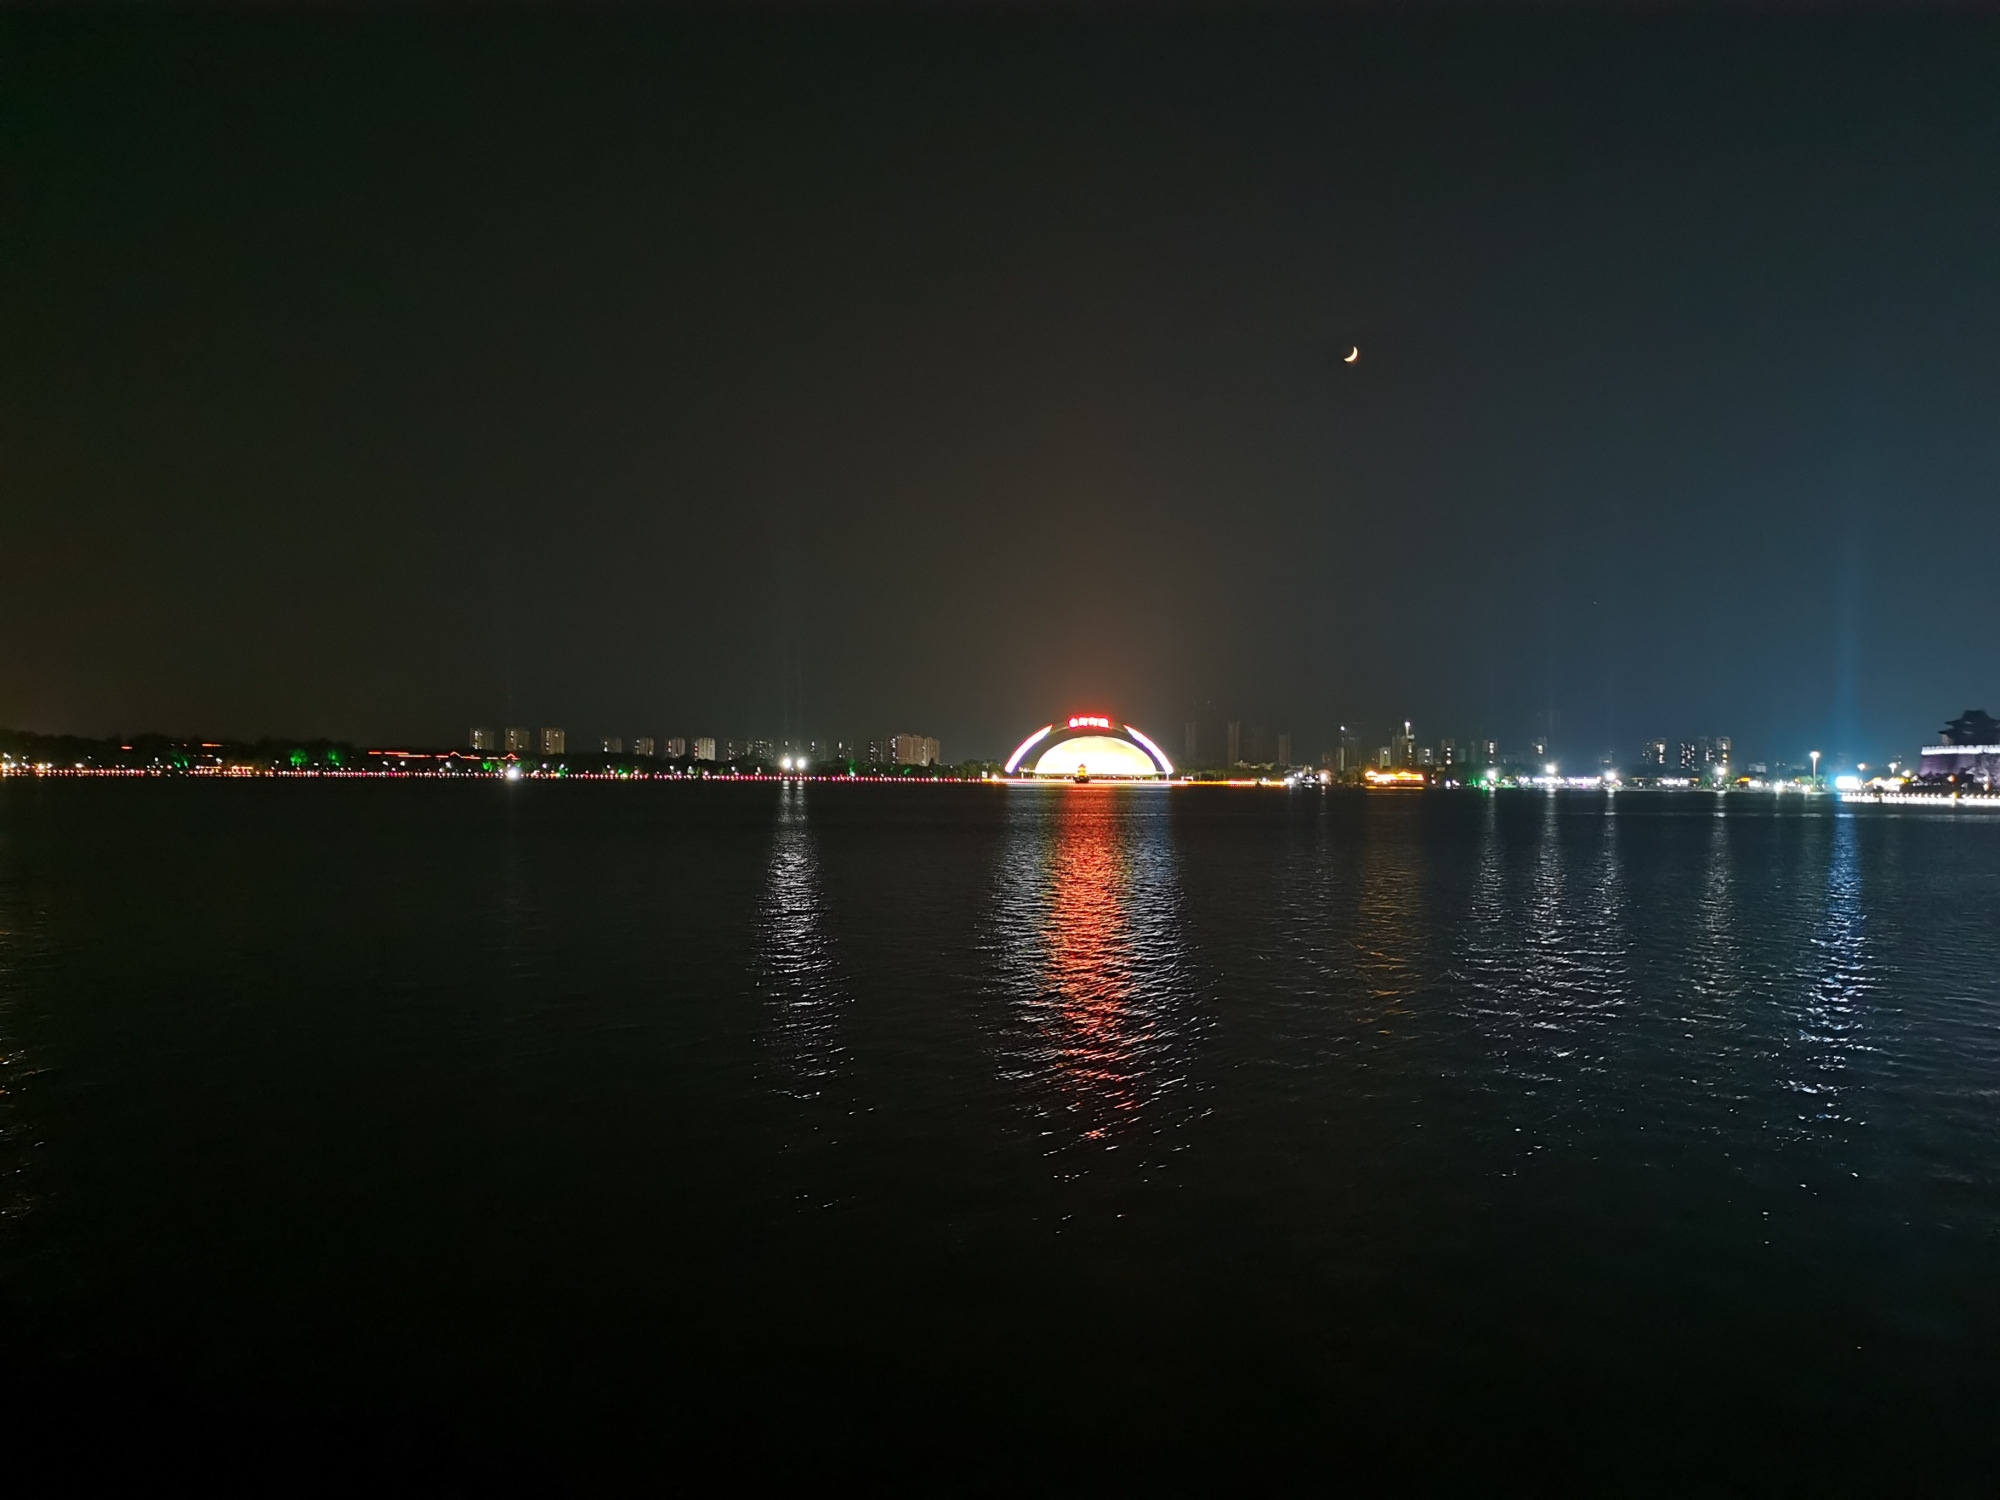 聊城东昌湖夜景图片